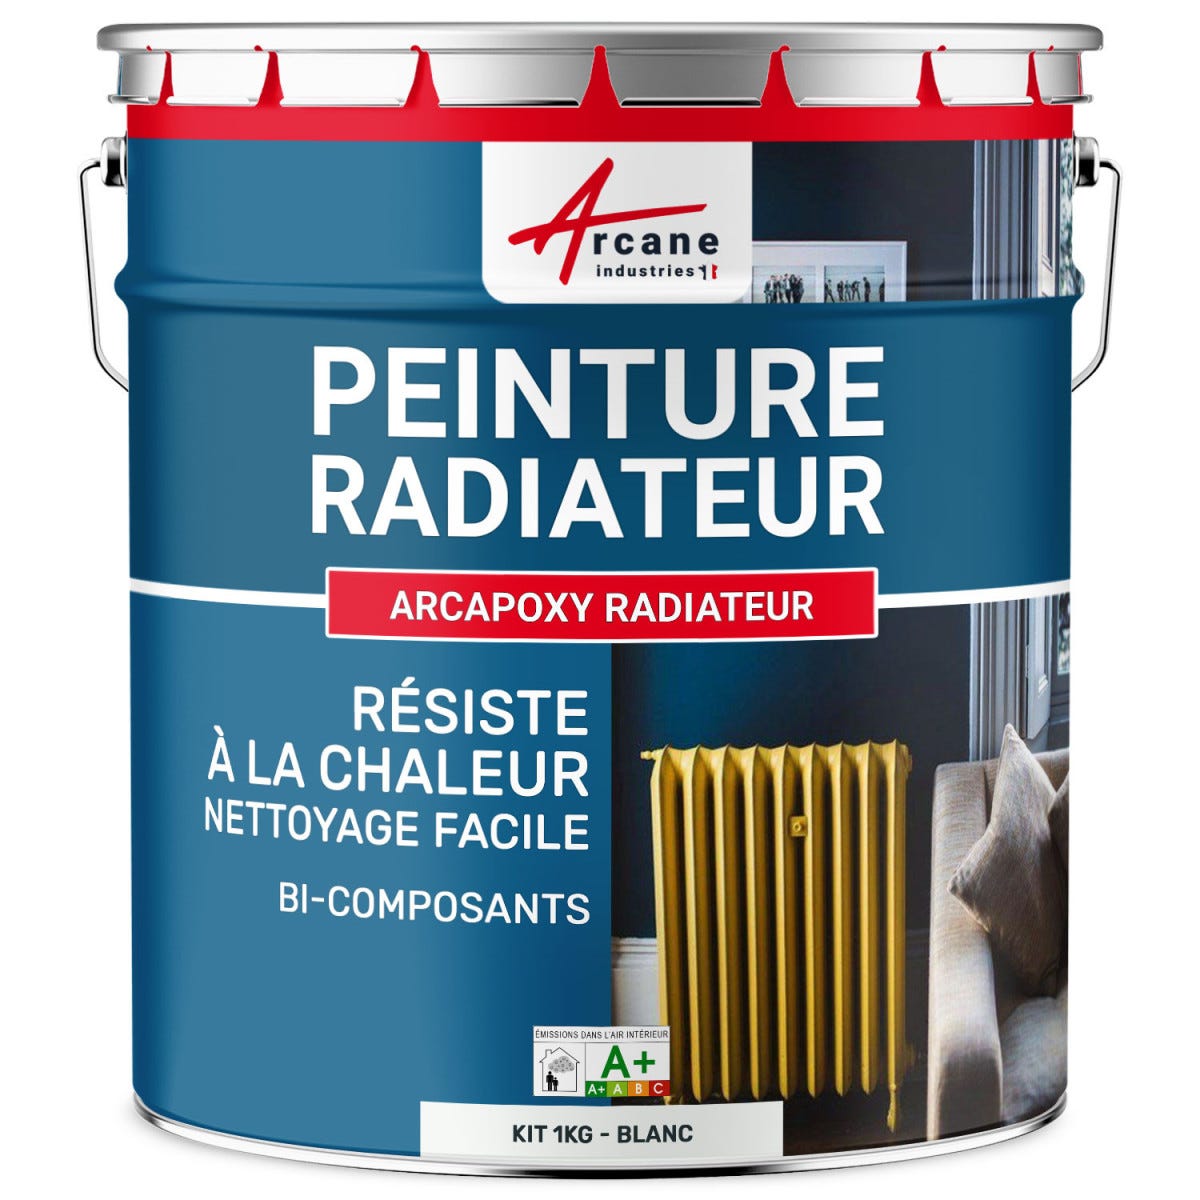 Peinture Radiateur fonte acier alu - PEINTURE RADIATEUR - 1 kg (jusqu'à 5 m² en 2 couches) - Blanc - RAL 9003 - ARCANE INDUSTRIES 0